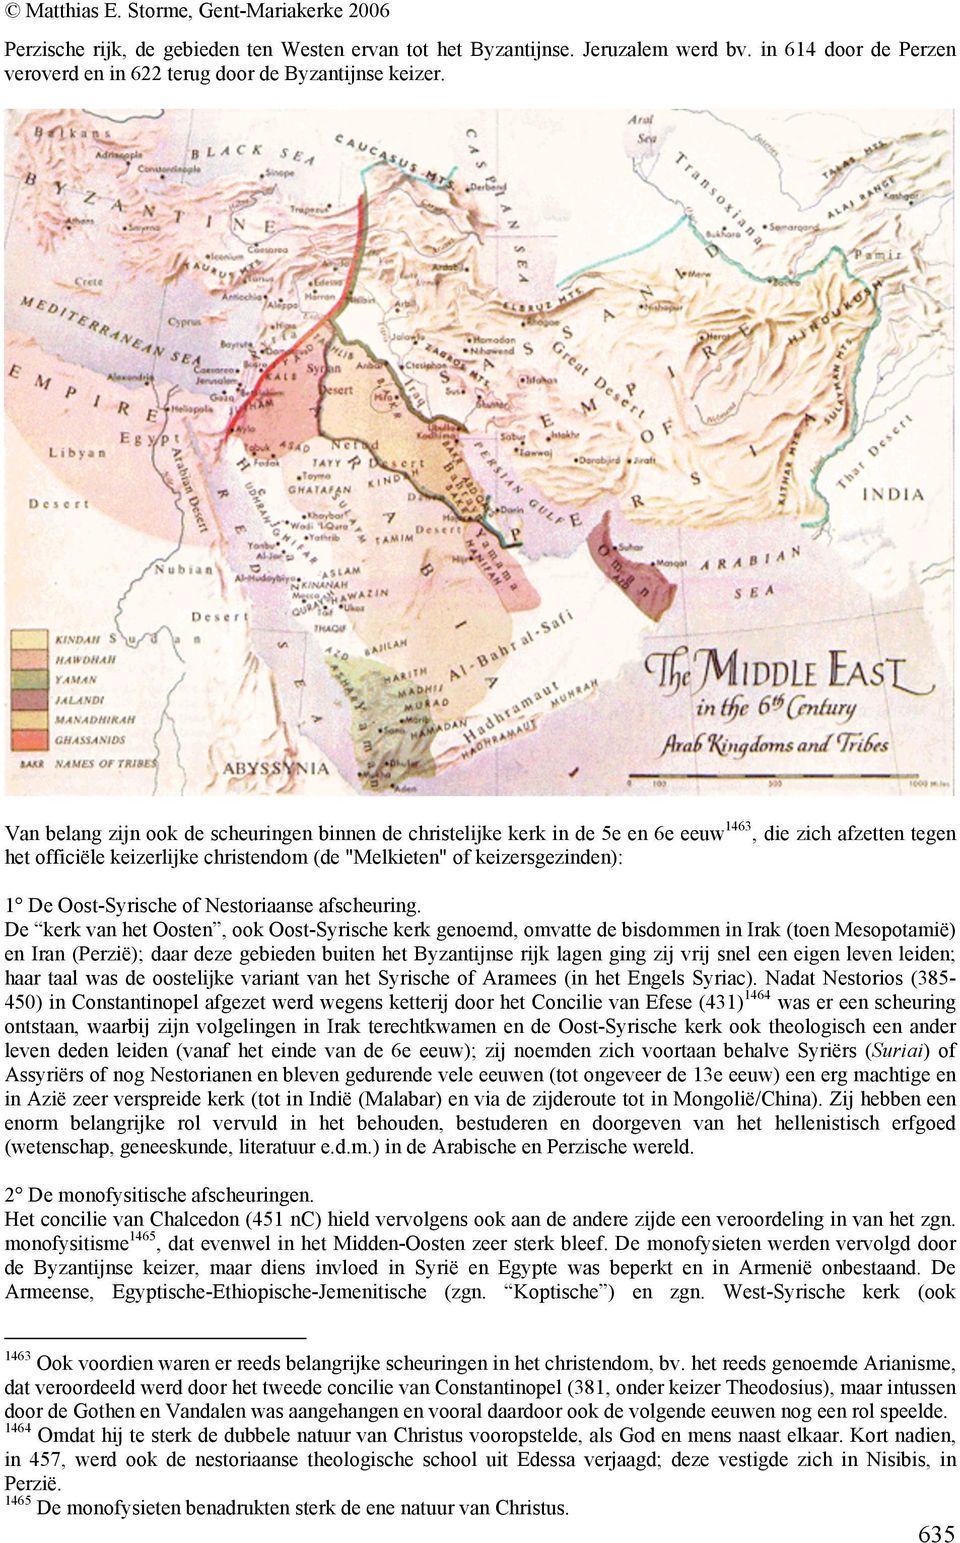 Oost-Syrische of Nestoriaanse afscheuring.